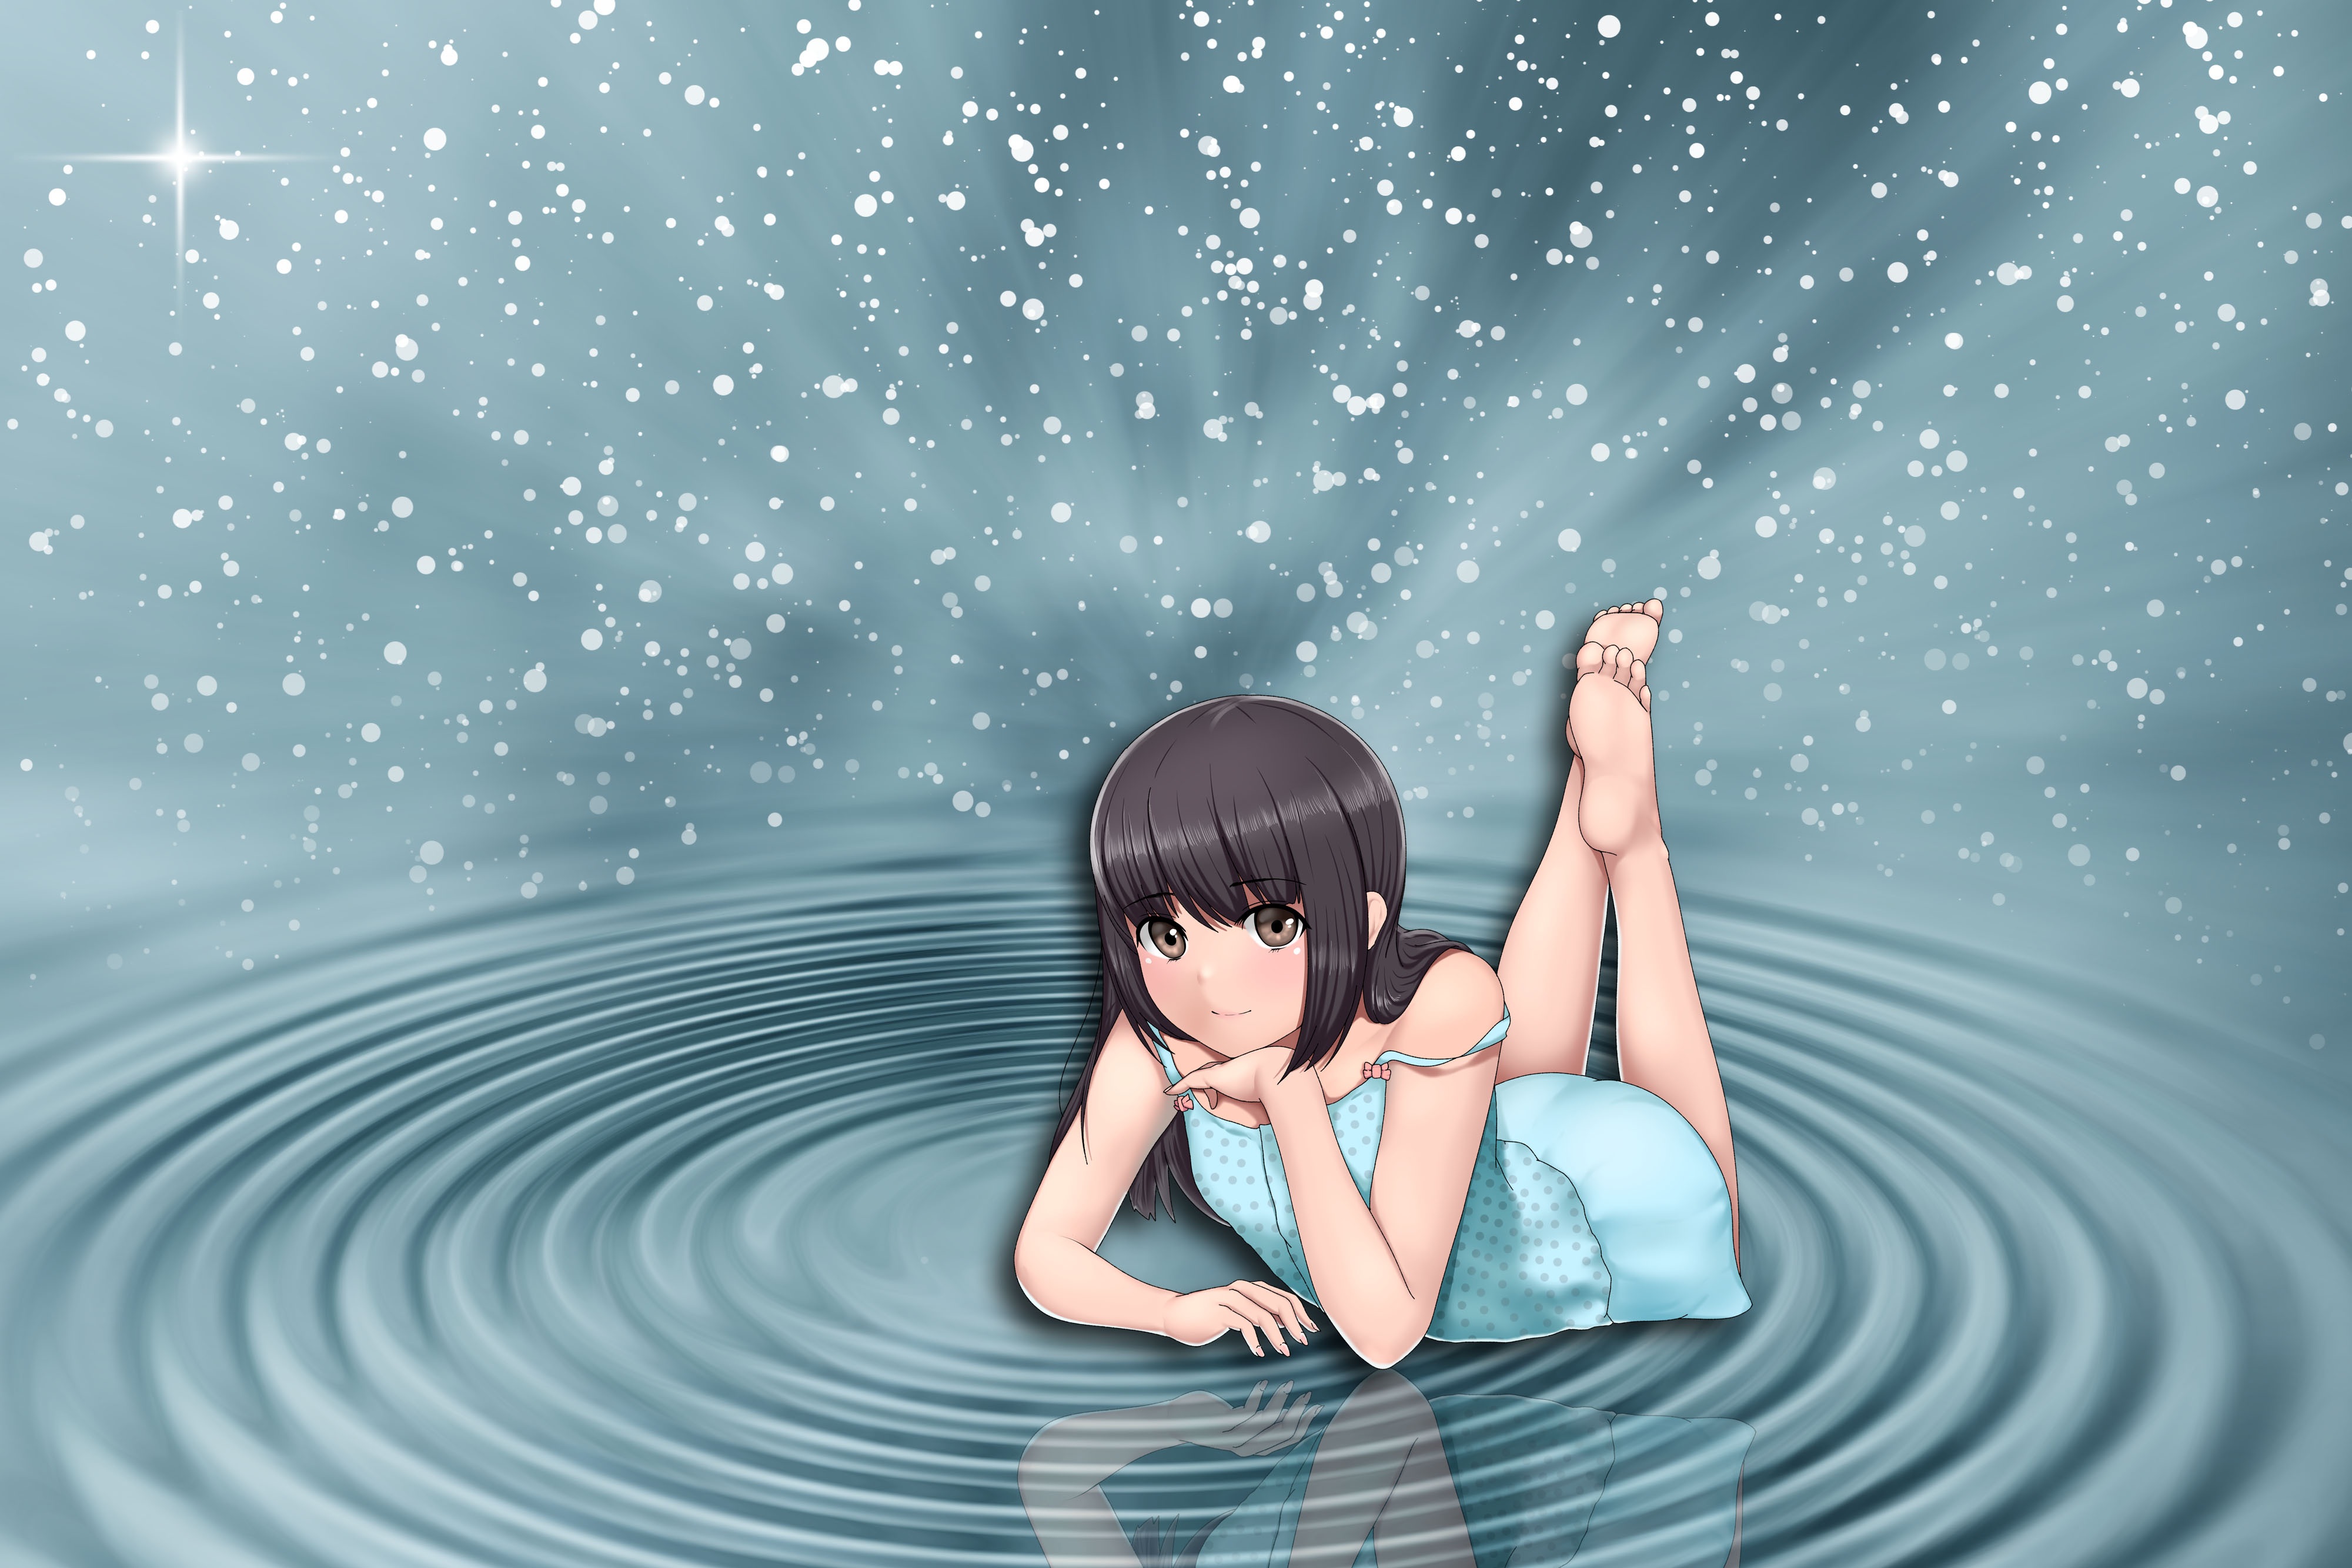 Magic Water Girl Anime - HD Wallpaper 